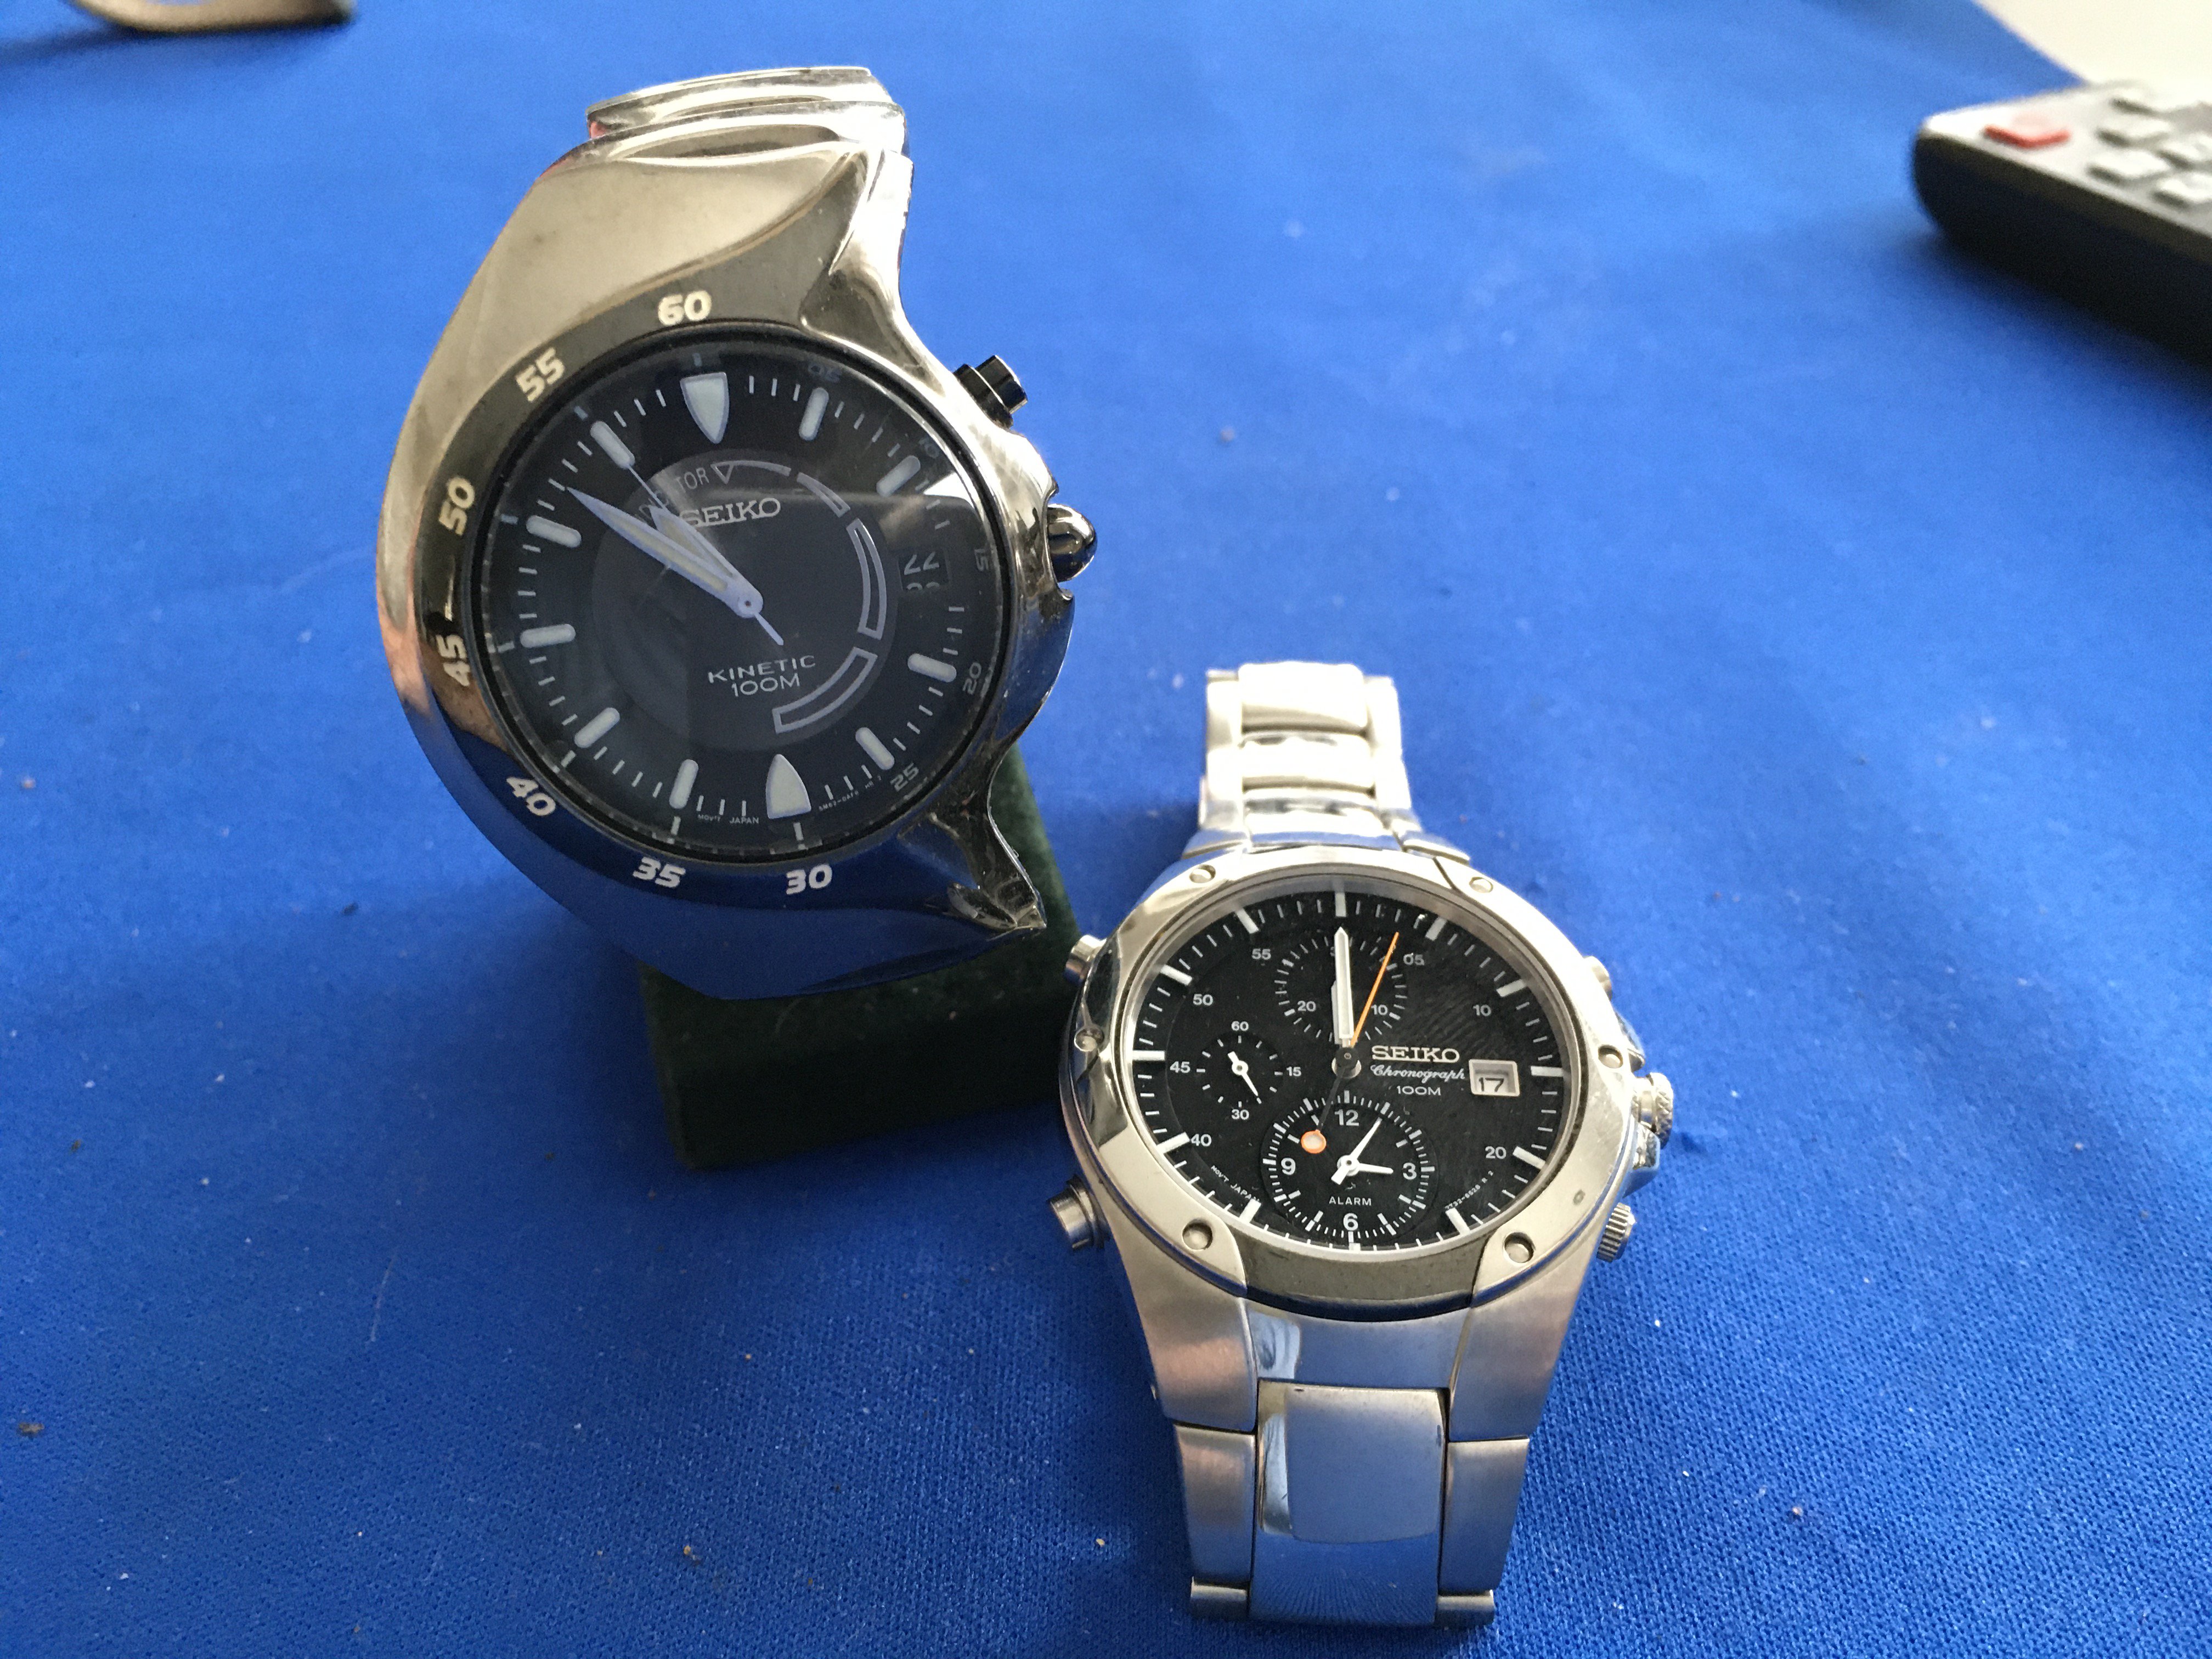 2 gents Seiko wristwatches. 1 Seiko Chronograph quartz 052128, 1 Seiko Kinetic indicator 481121.